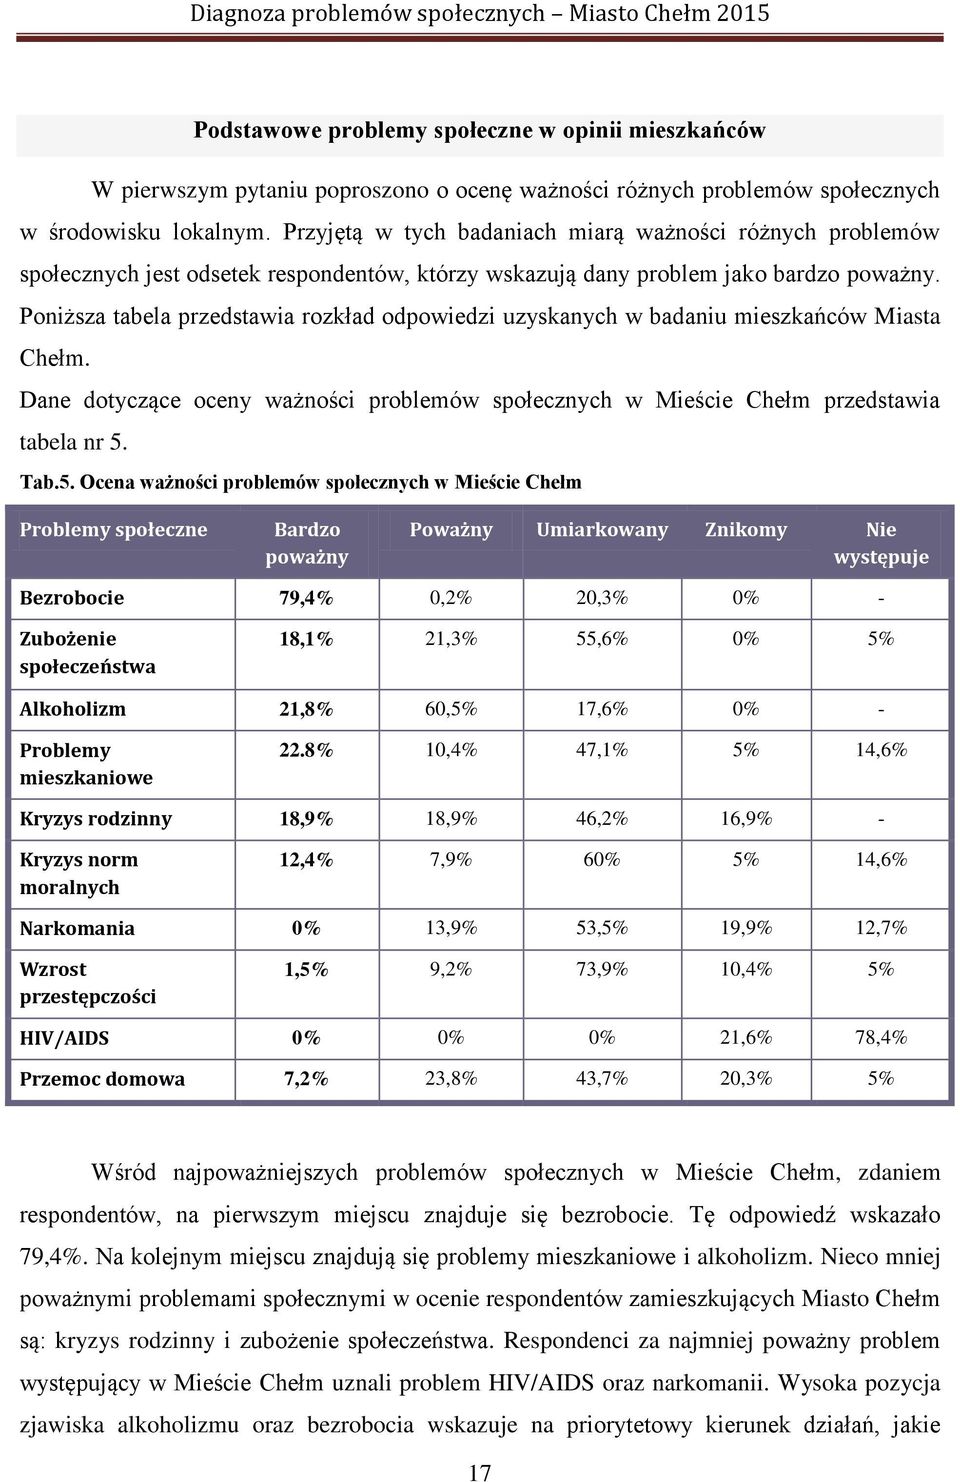 Poniższa tabela przedstawia rozkład odpowiedzi uzyskanych w badaniu mieszkańców Miasta Chełm. Dane dotyczące oceny ważności problemów społecznych w Mieście Chełm przedstawia tabela nr 5.